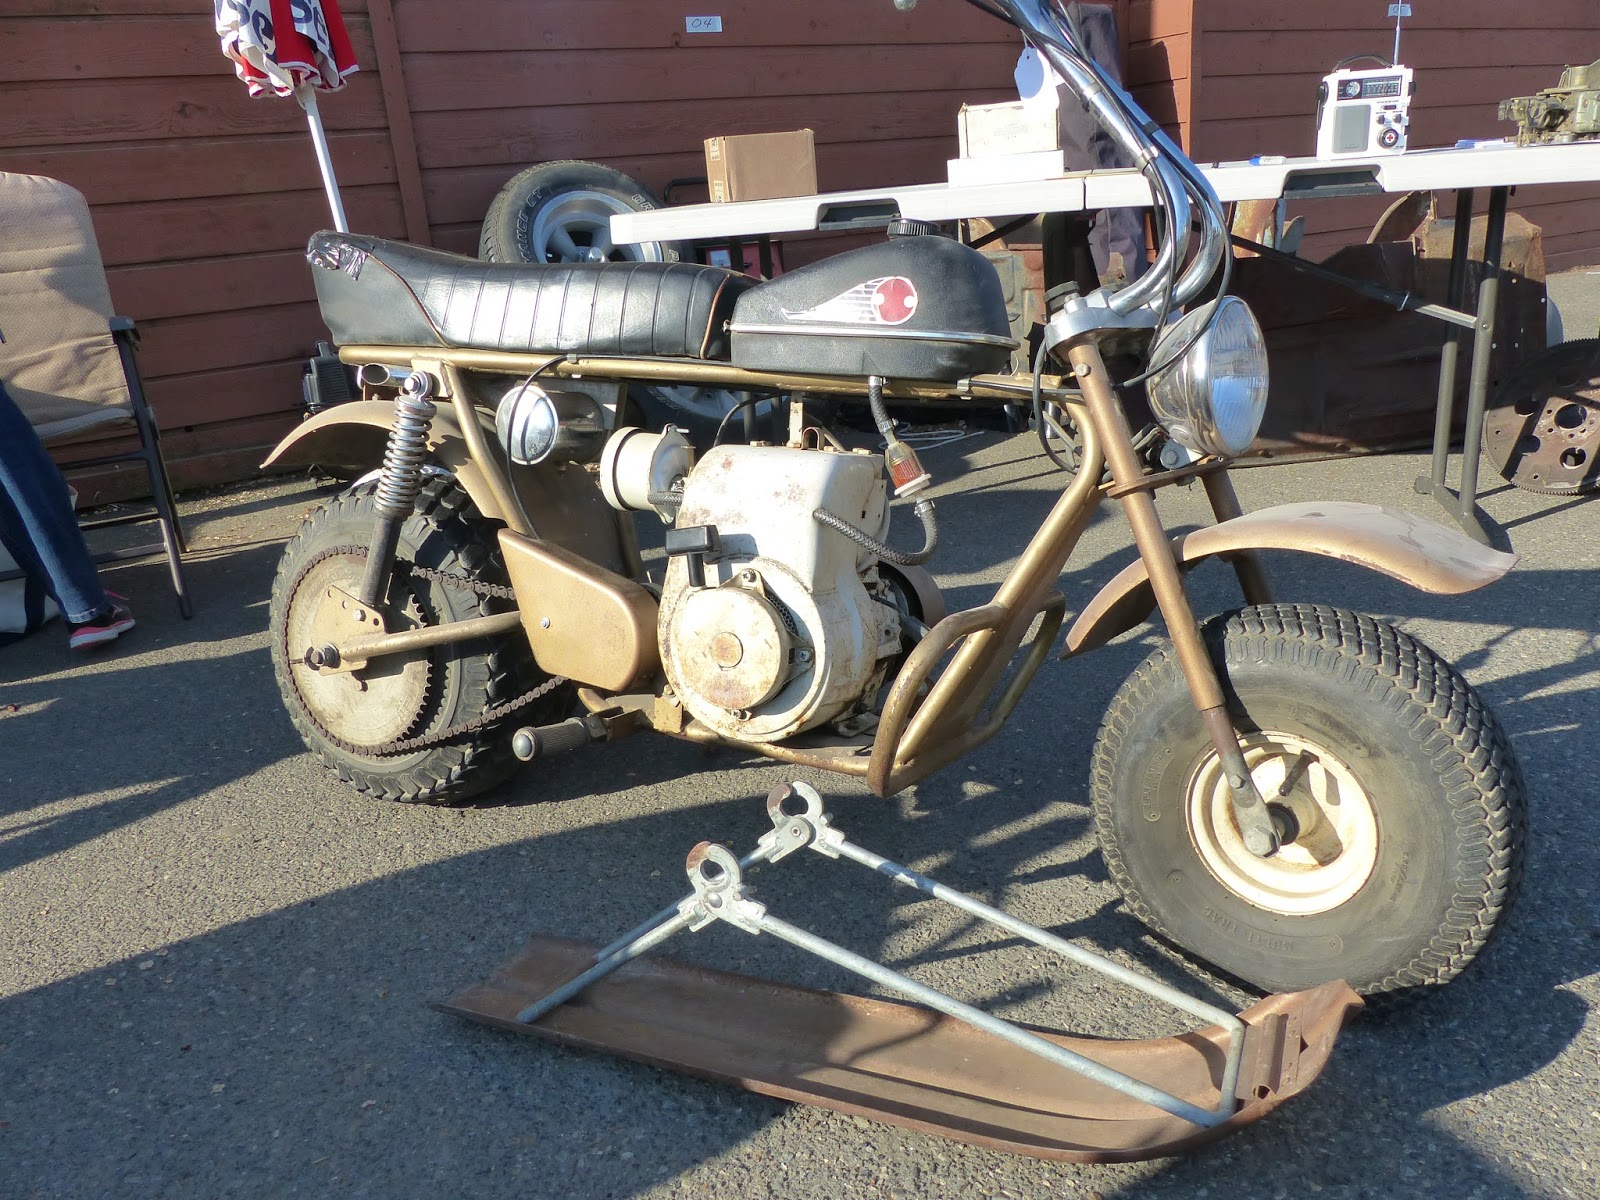 OldMotoDude: Heathkit Mini-Bike with Ski for sale ($1,500) at ...